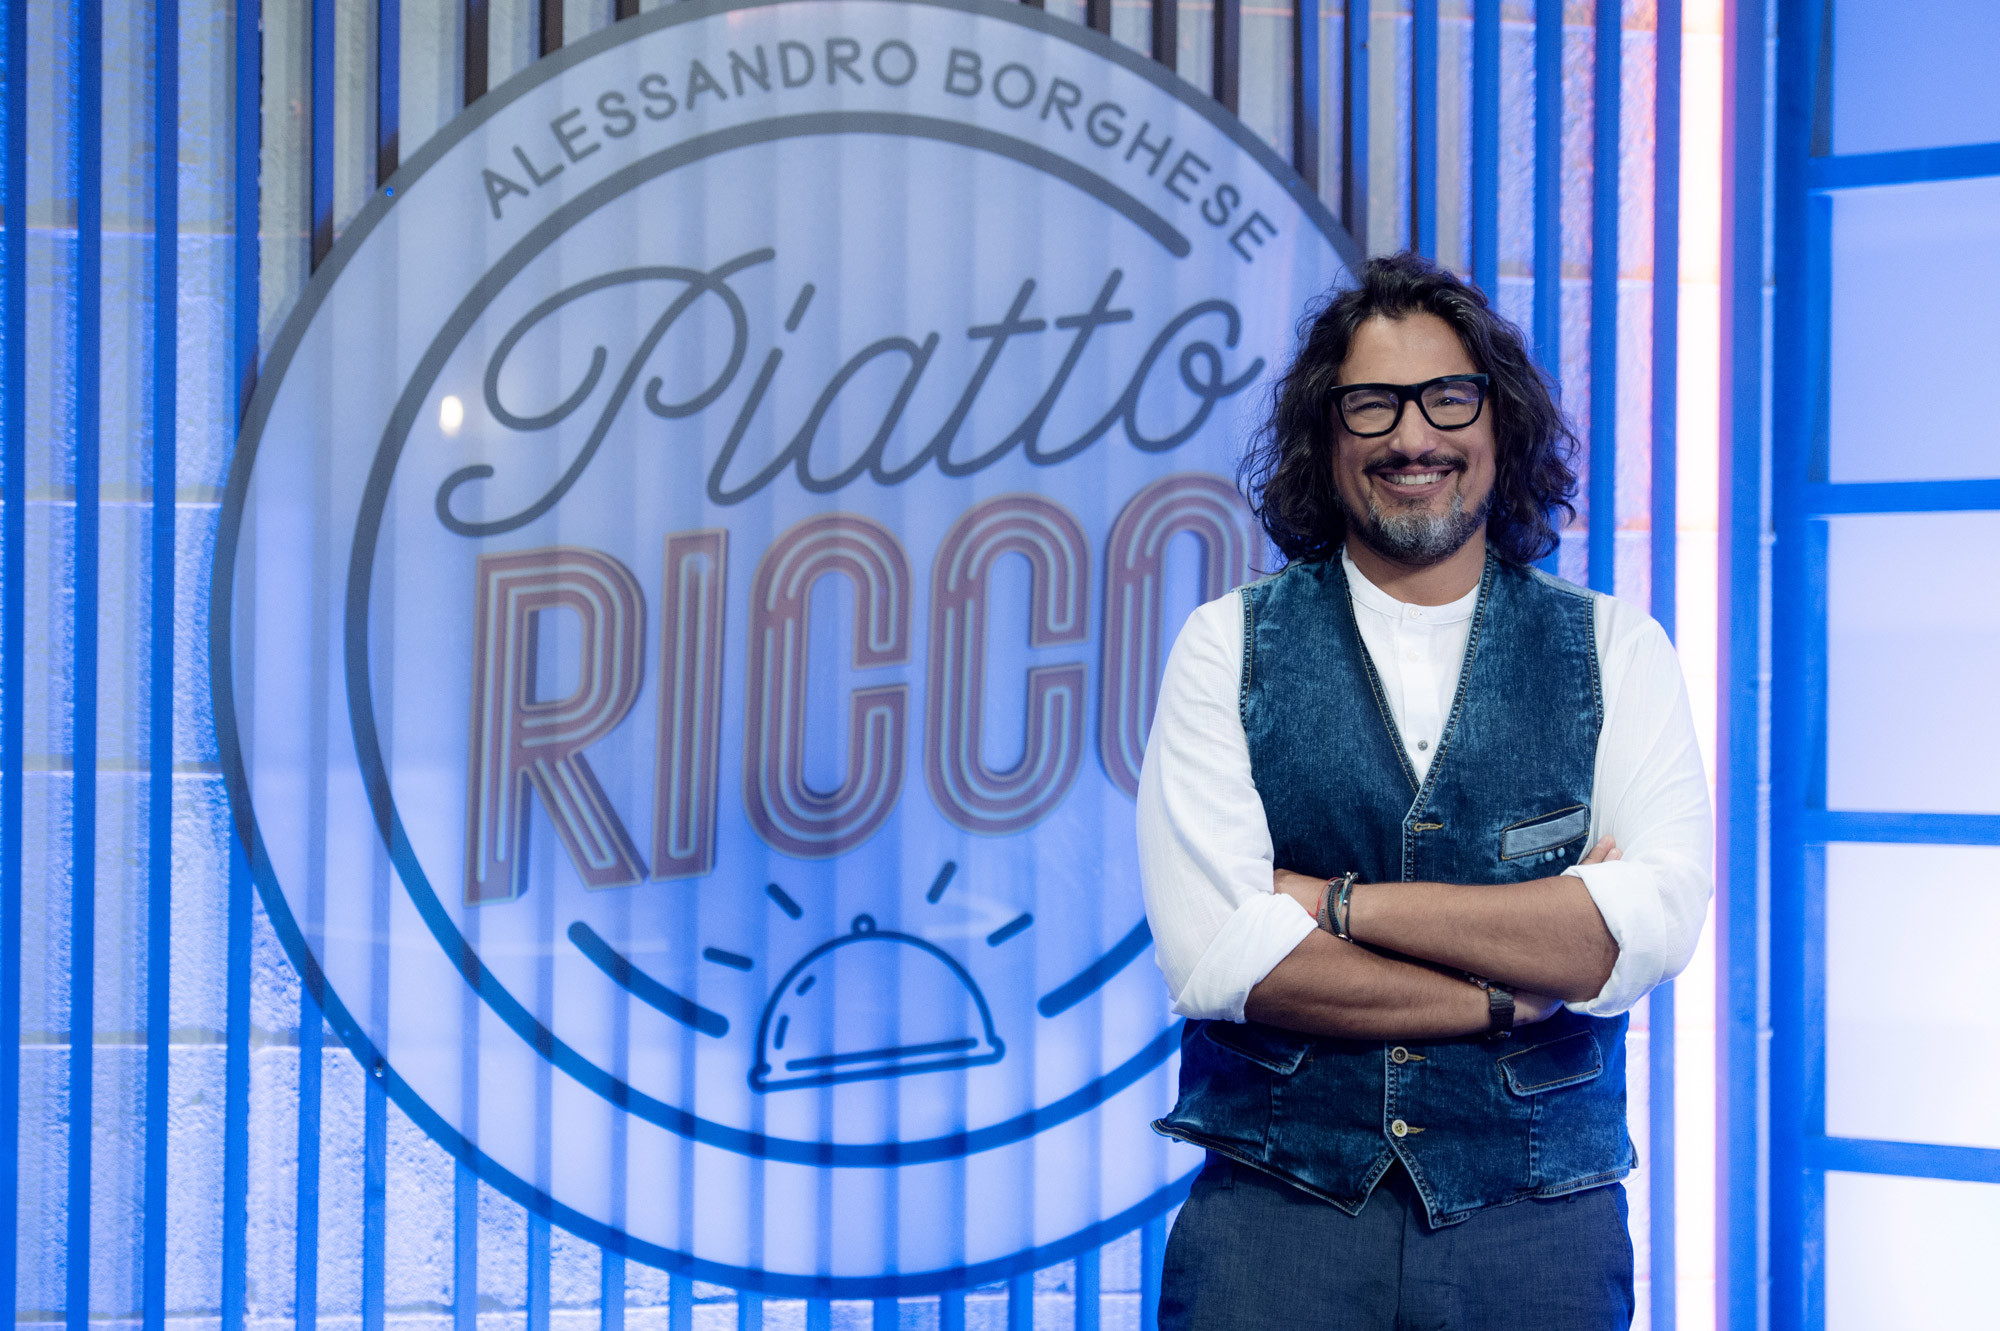 Alessandro Borghese in Piatto Ricco per TV8 [credit: courtesy of TV8]